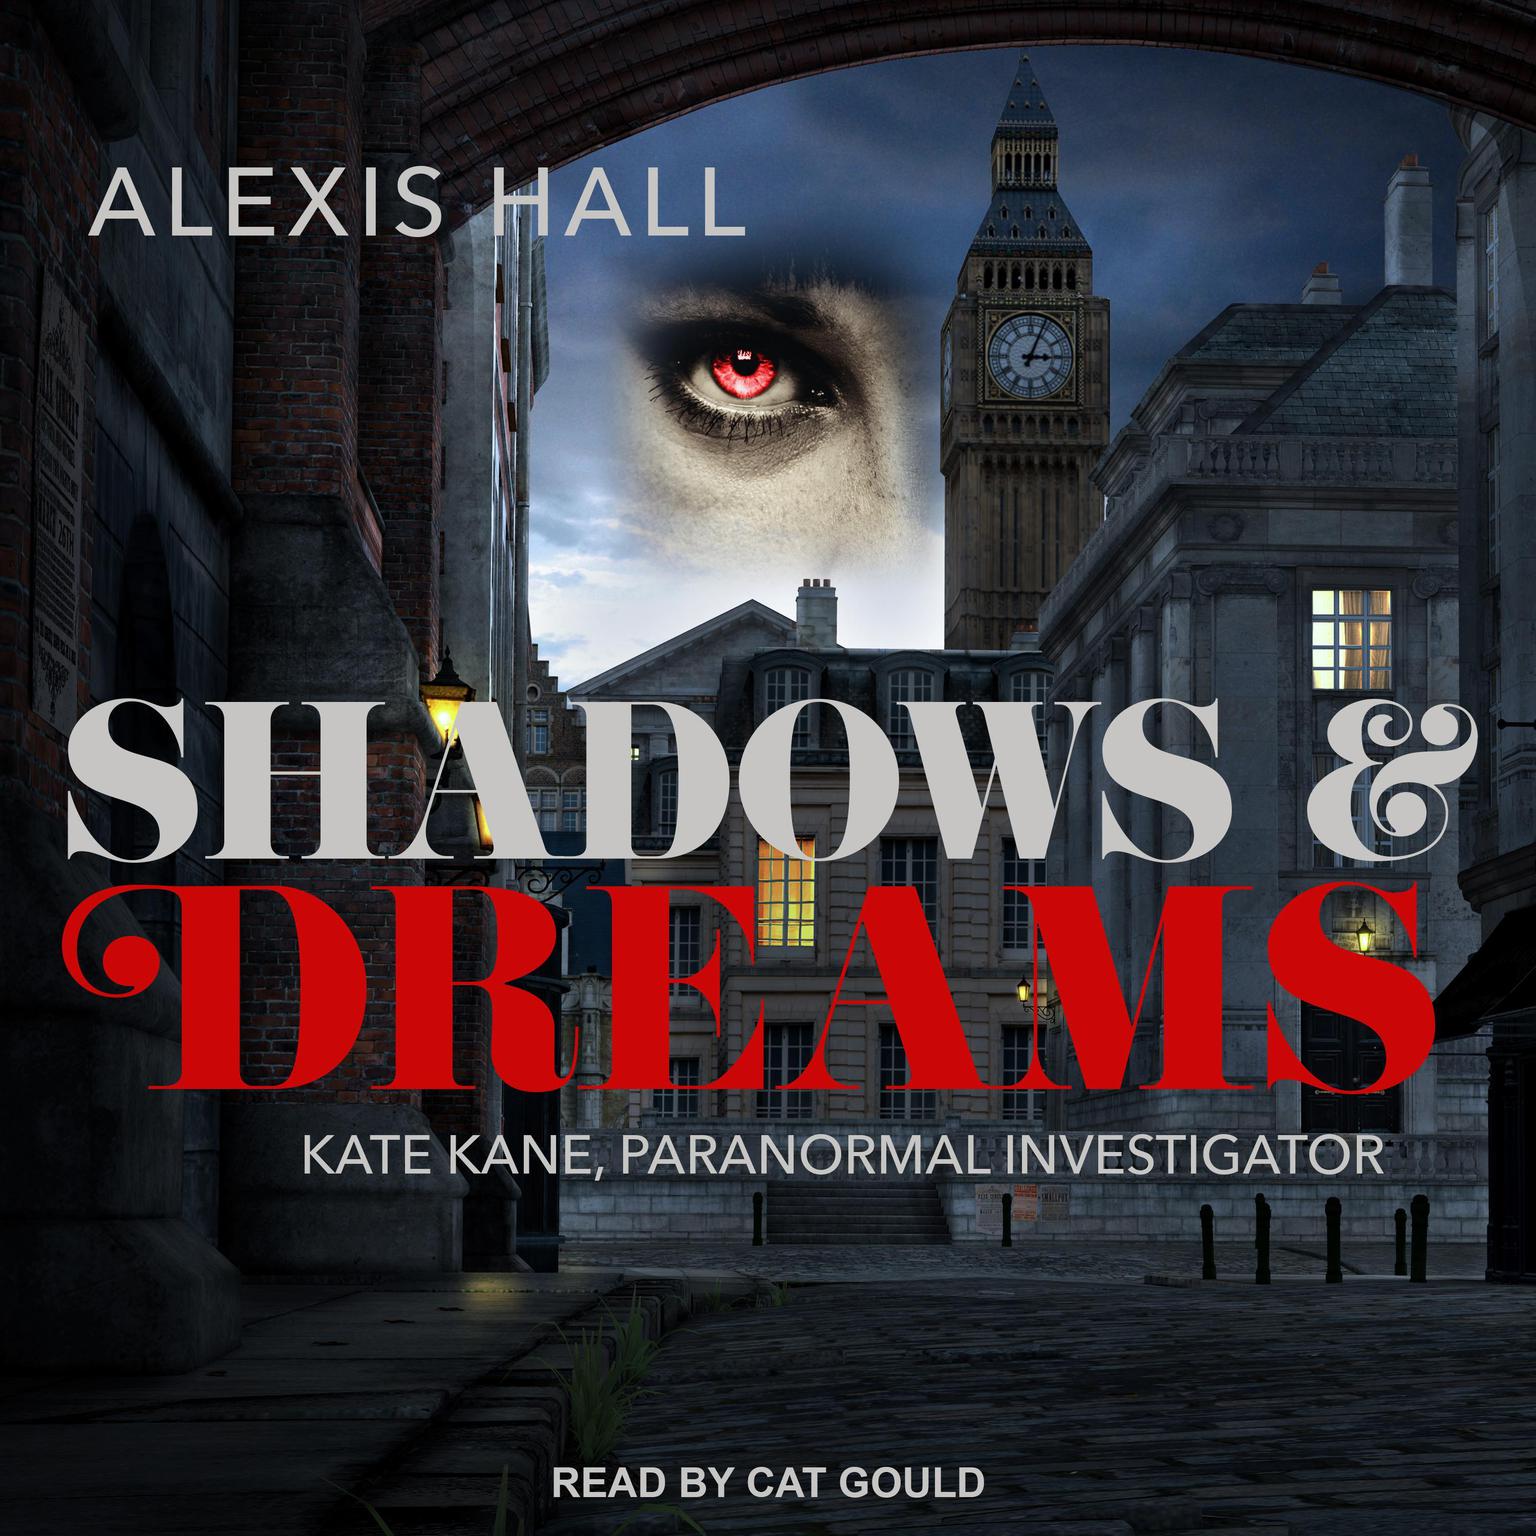 Alexis Hall, Cat Gould: Shadows & Dreams (AudiobookFormat, 2020, Tantor Audio)